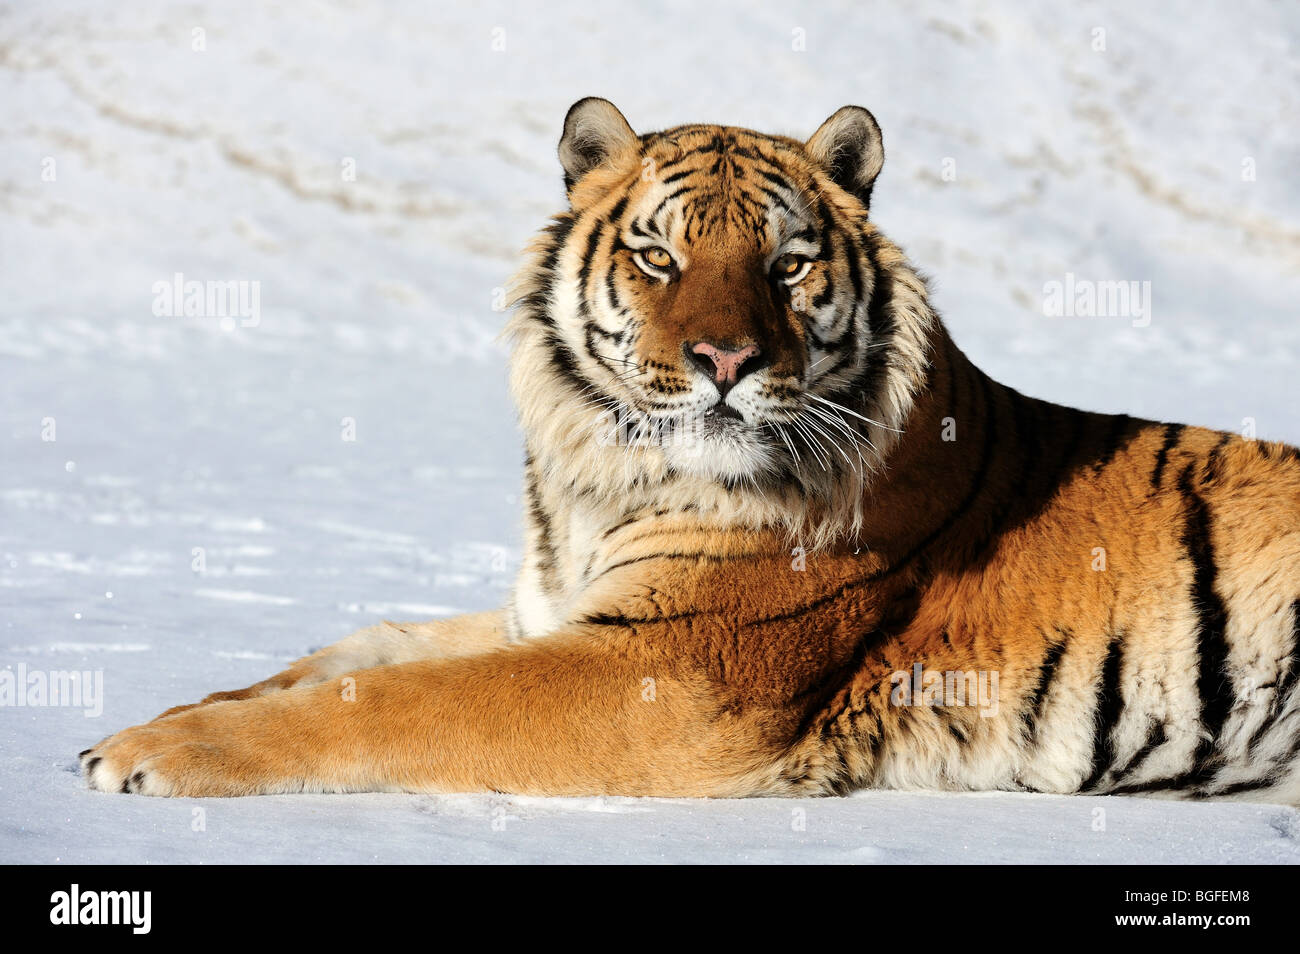 Siberian tiger (Panthera tigris altaica)- captive in winter habitat, Bozeman, Montana, USA Stock Photo